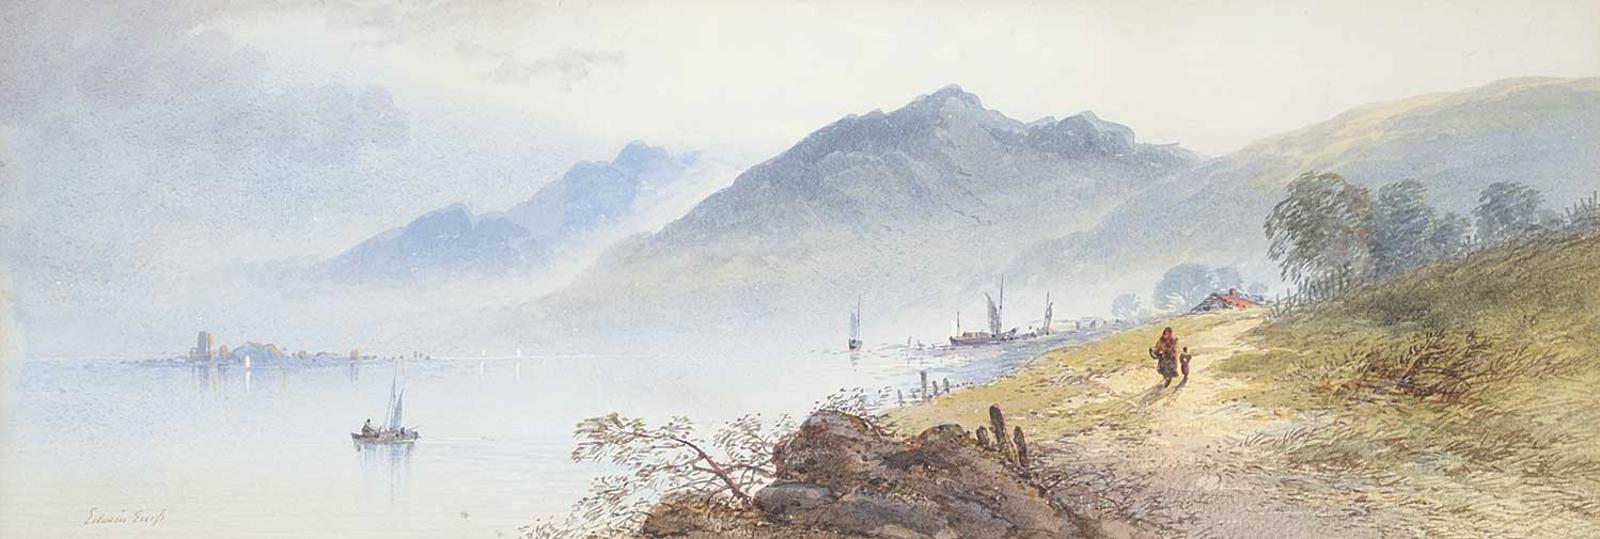 Edwin Earp (1851) - Untitled - Fishing Village